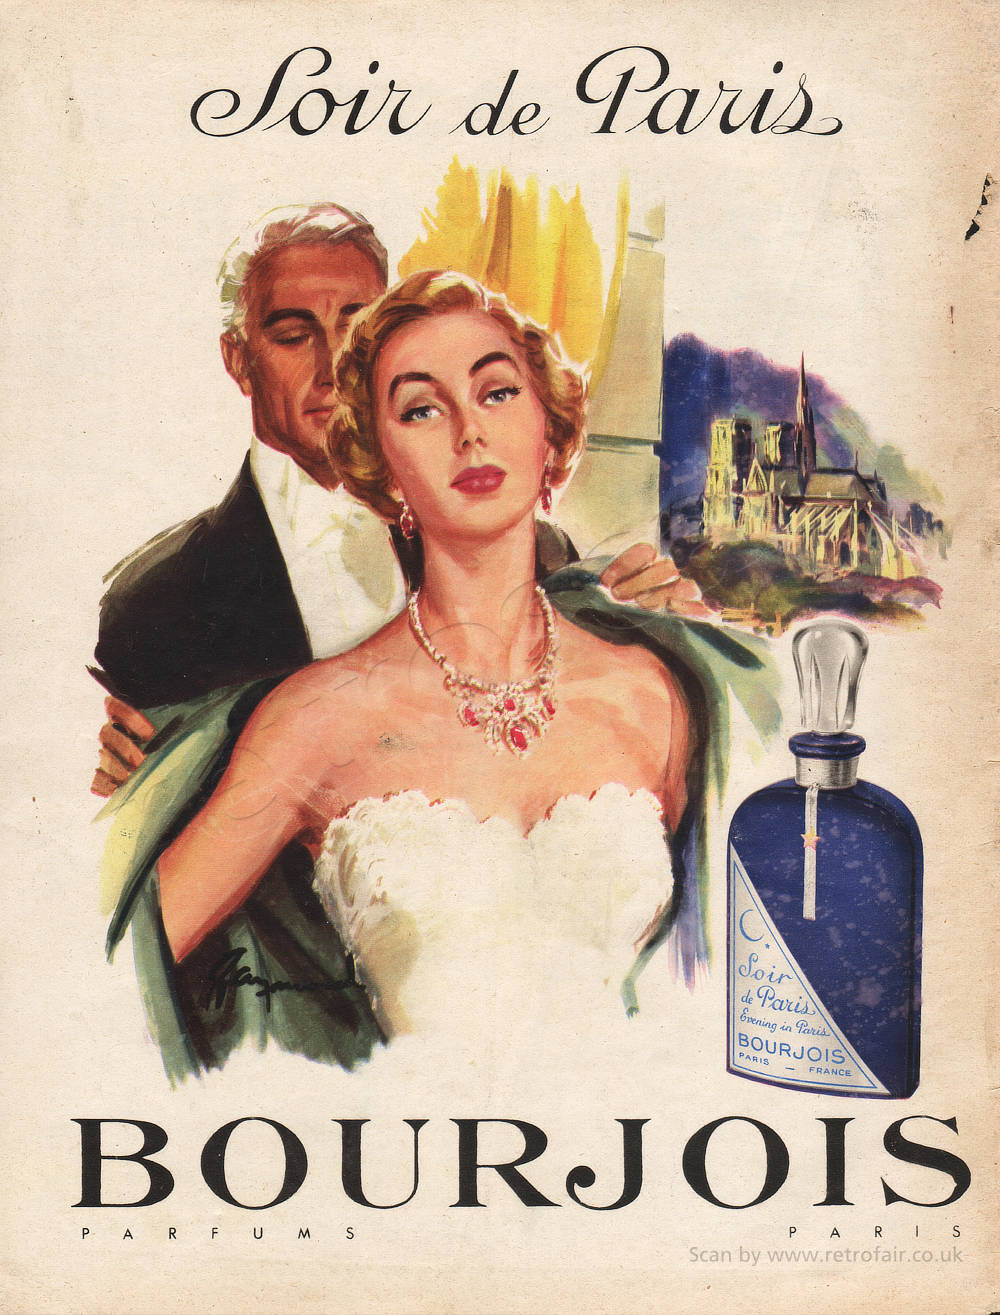  1954 Bourjois Perfume unframed vintage ad